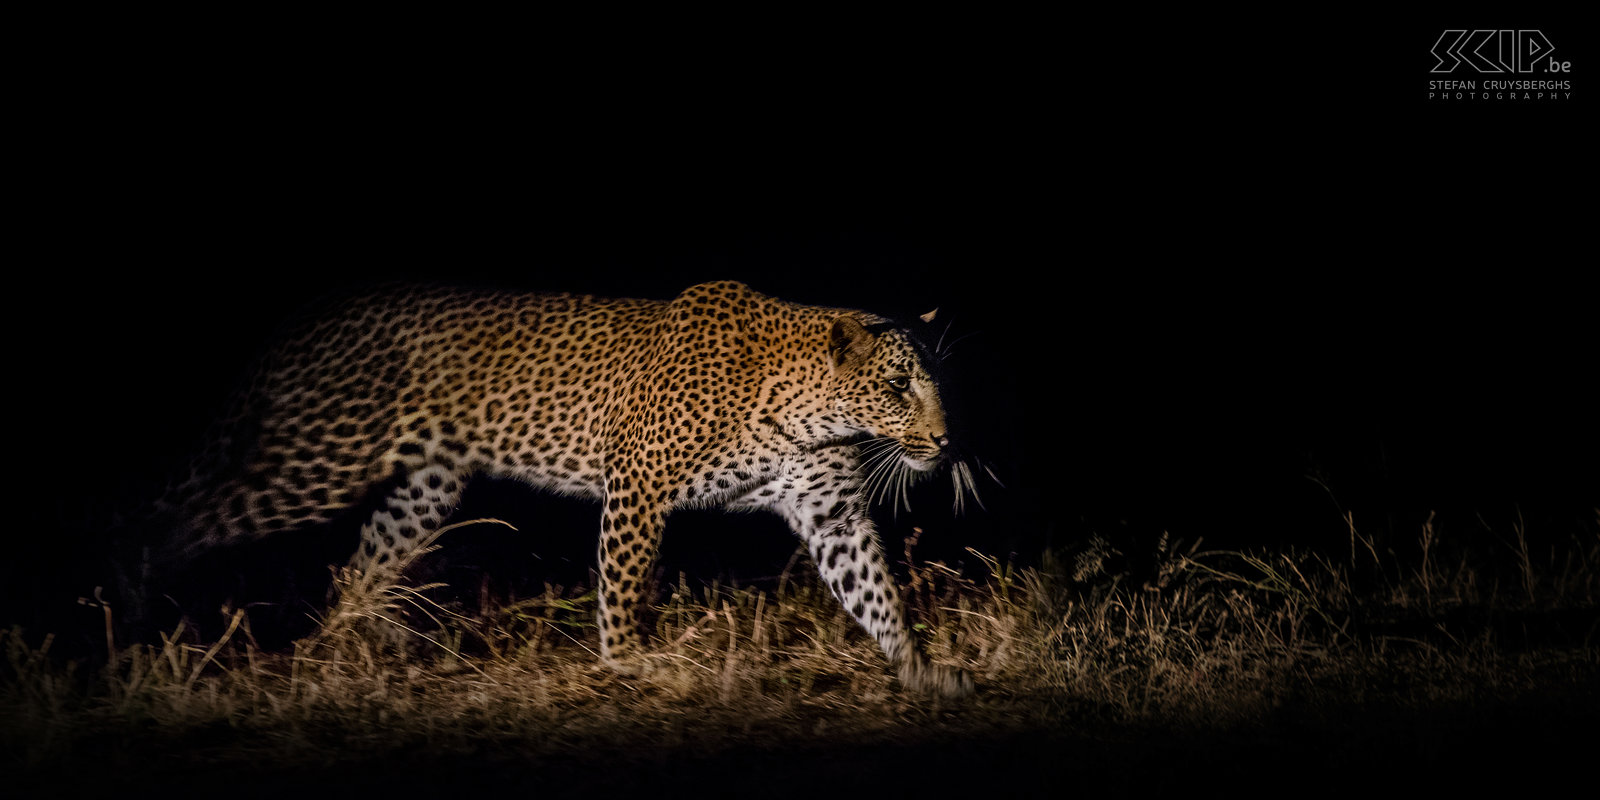 South Luangwa - Luipaard op jacht 's nachts Tijdens een nacht safari komen we opnieuw een luipaard tegen dat op jacht is. We storen slechts heel kort zodat ze verder kan jagen. Stefan Cruysberghs